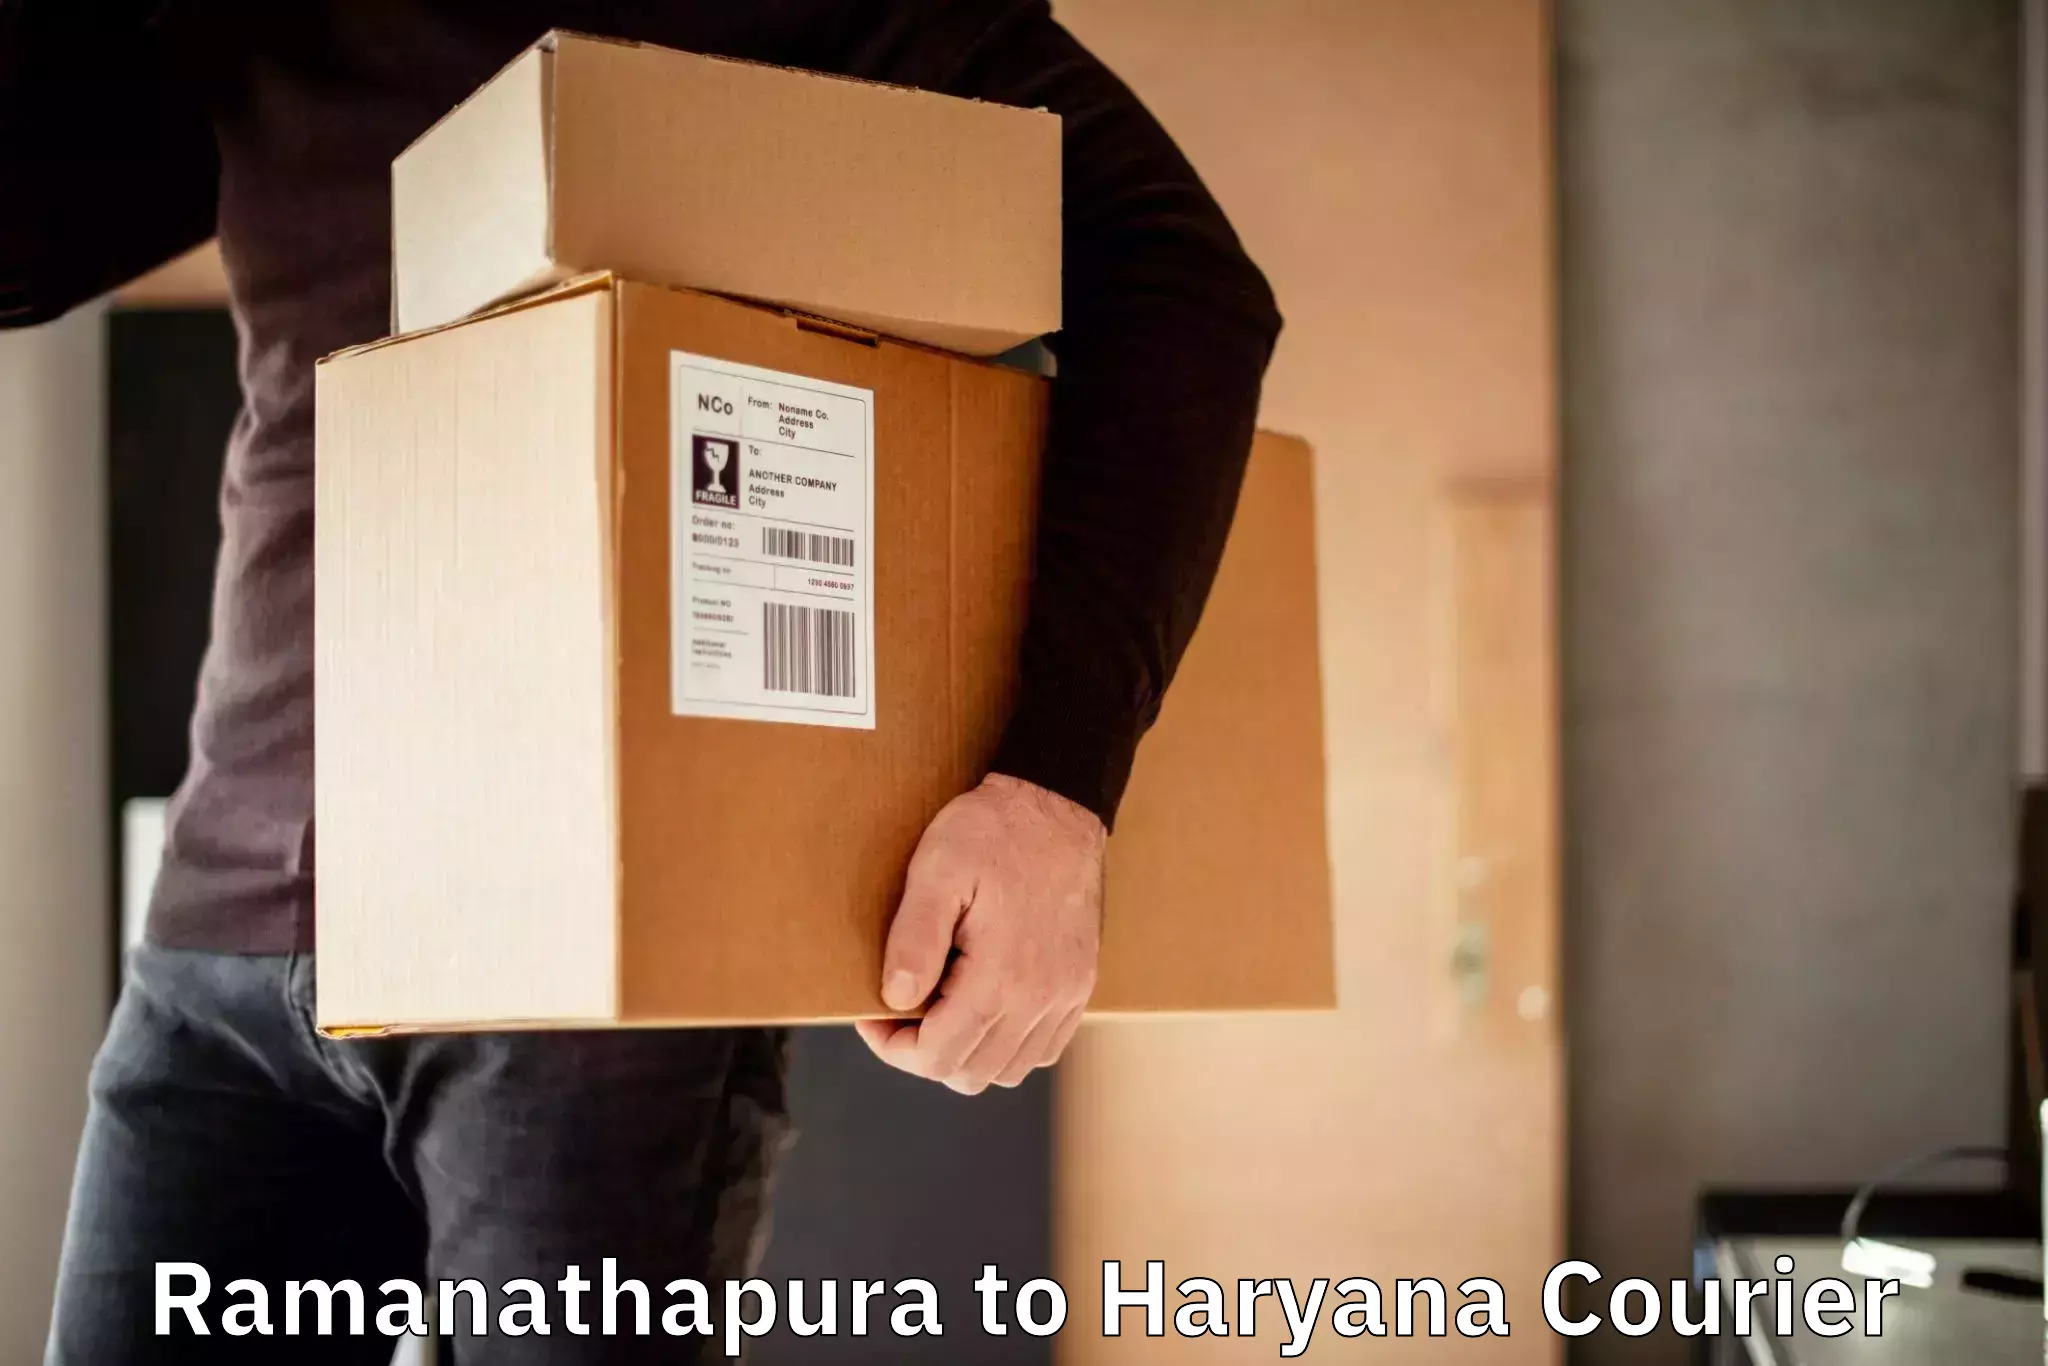 Door to door delivery in Ramanathapura to NCR Haryana